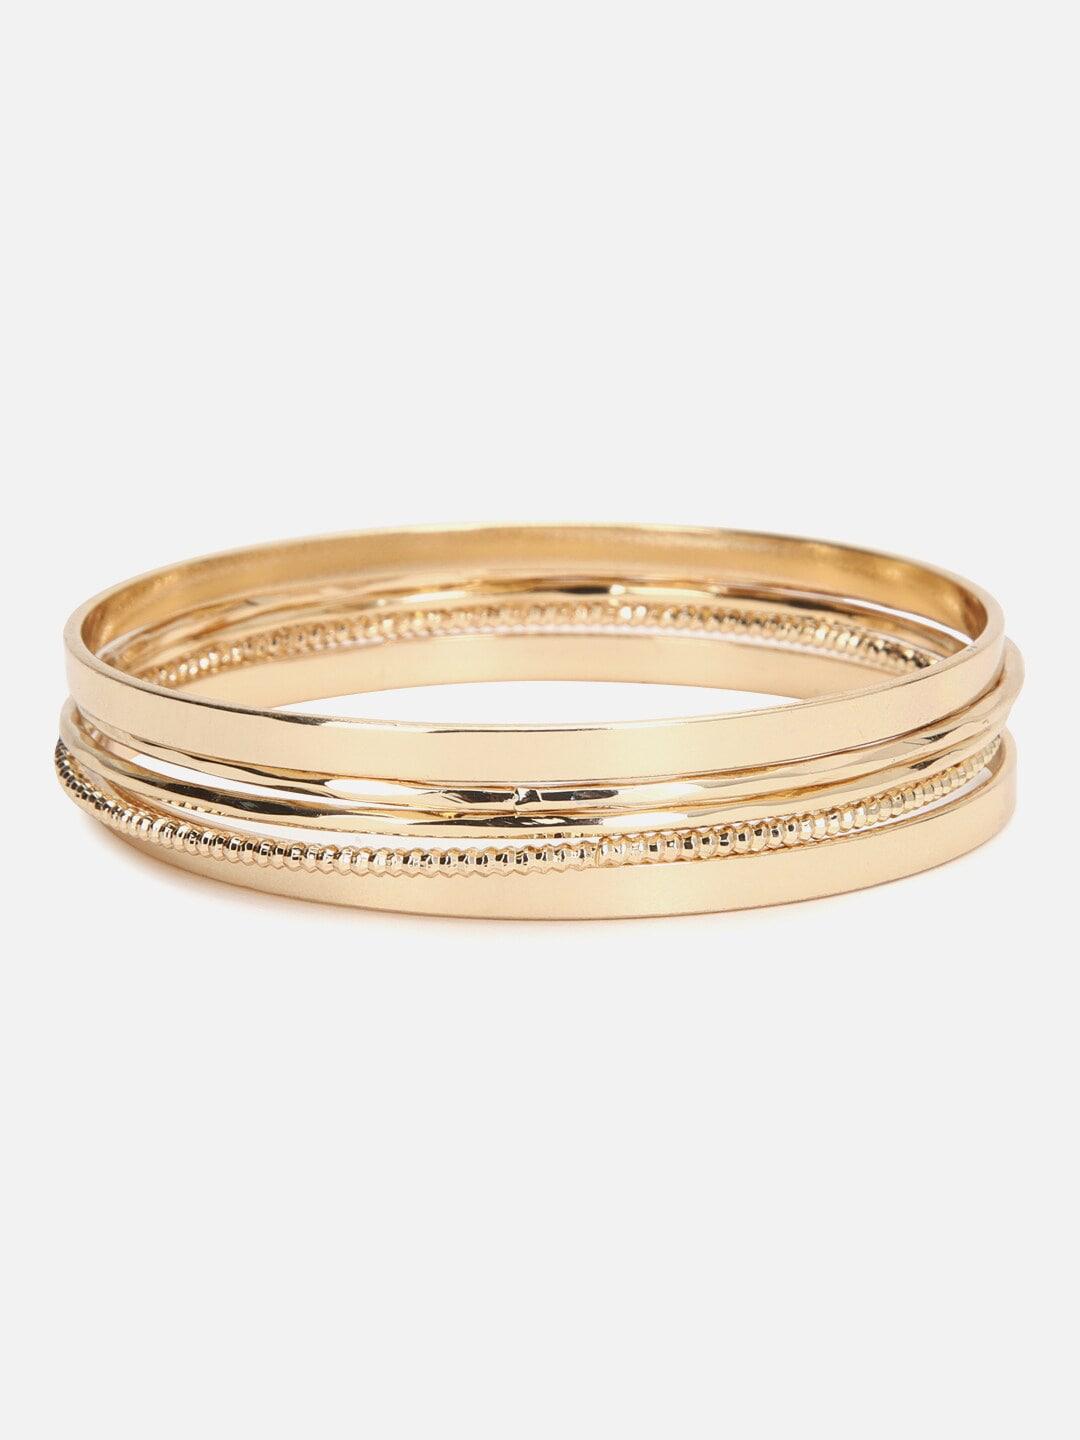 forever-21-women-5-gold-toned-kada-bracelet